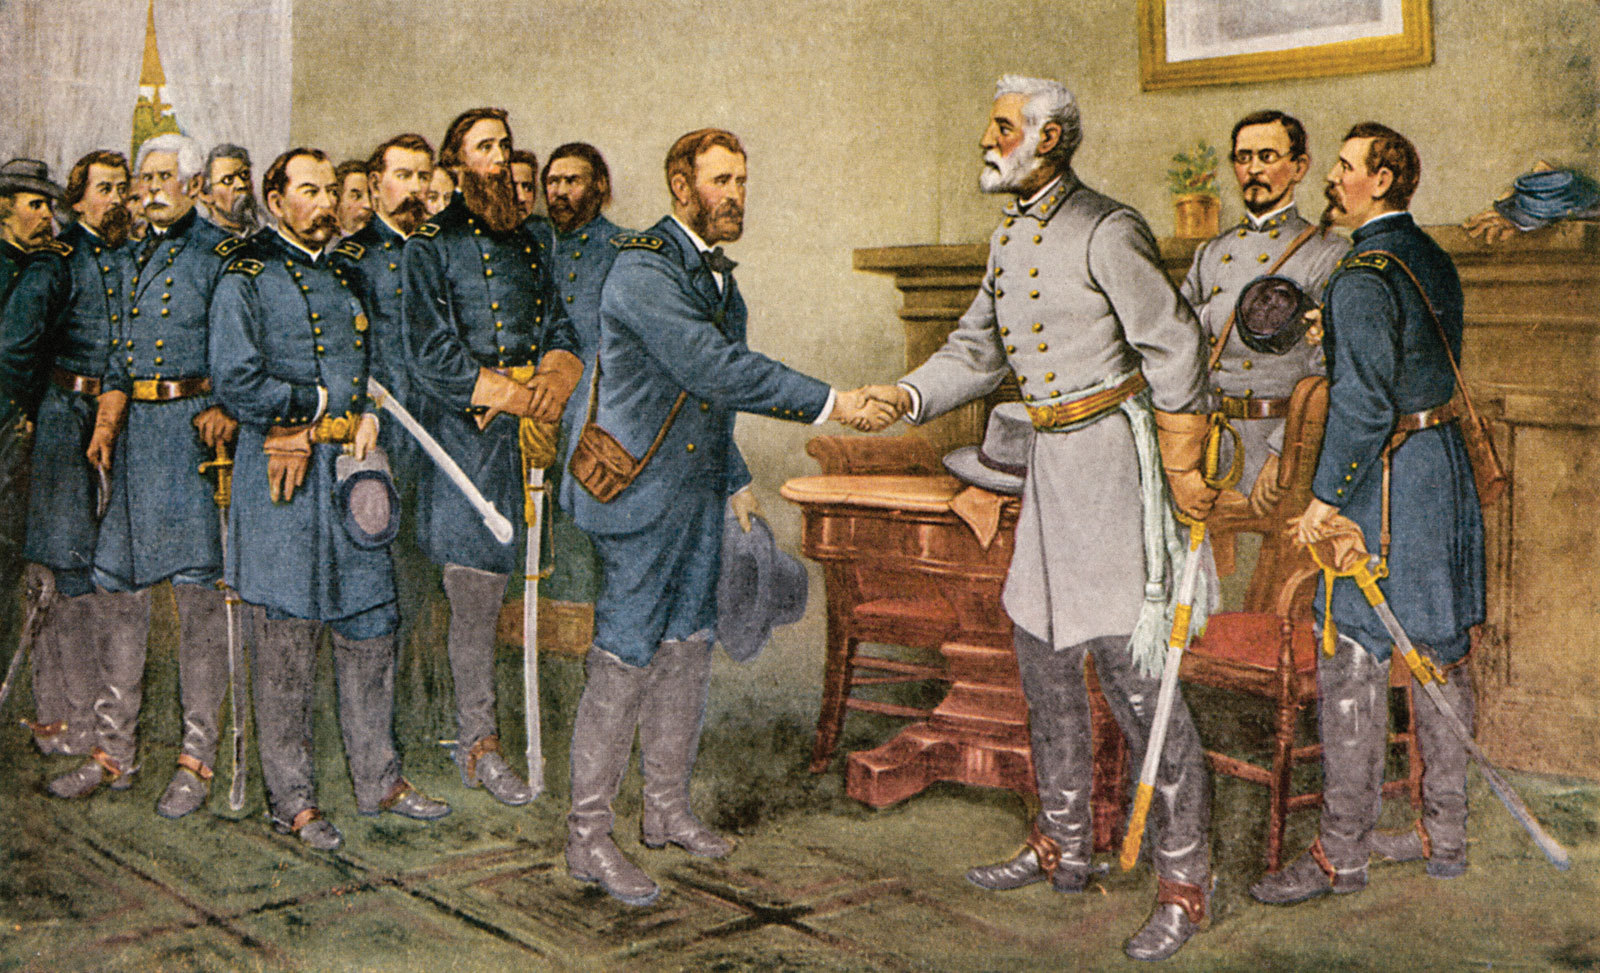 La rendición del general Lee ante el general Grant en Appomattox, Virginia, el 9 de abril de 1865. Reproducción de una pintura de Thomas Nast, realizada hacia 1880.